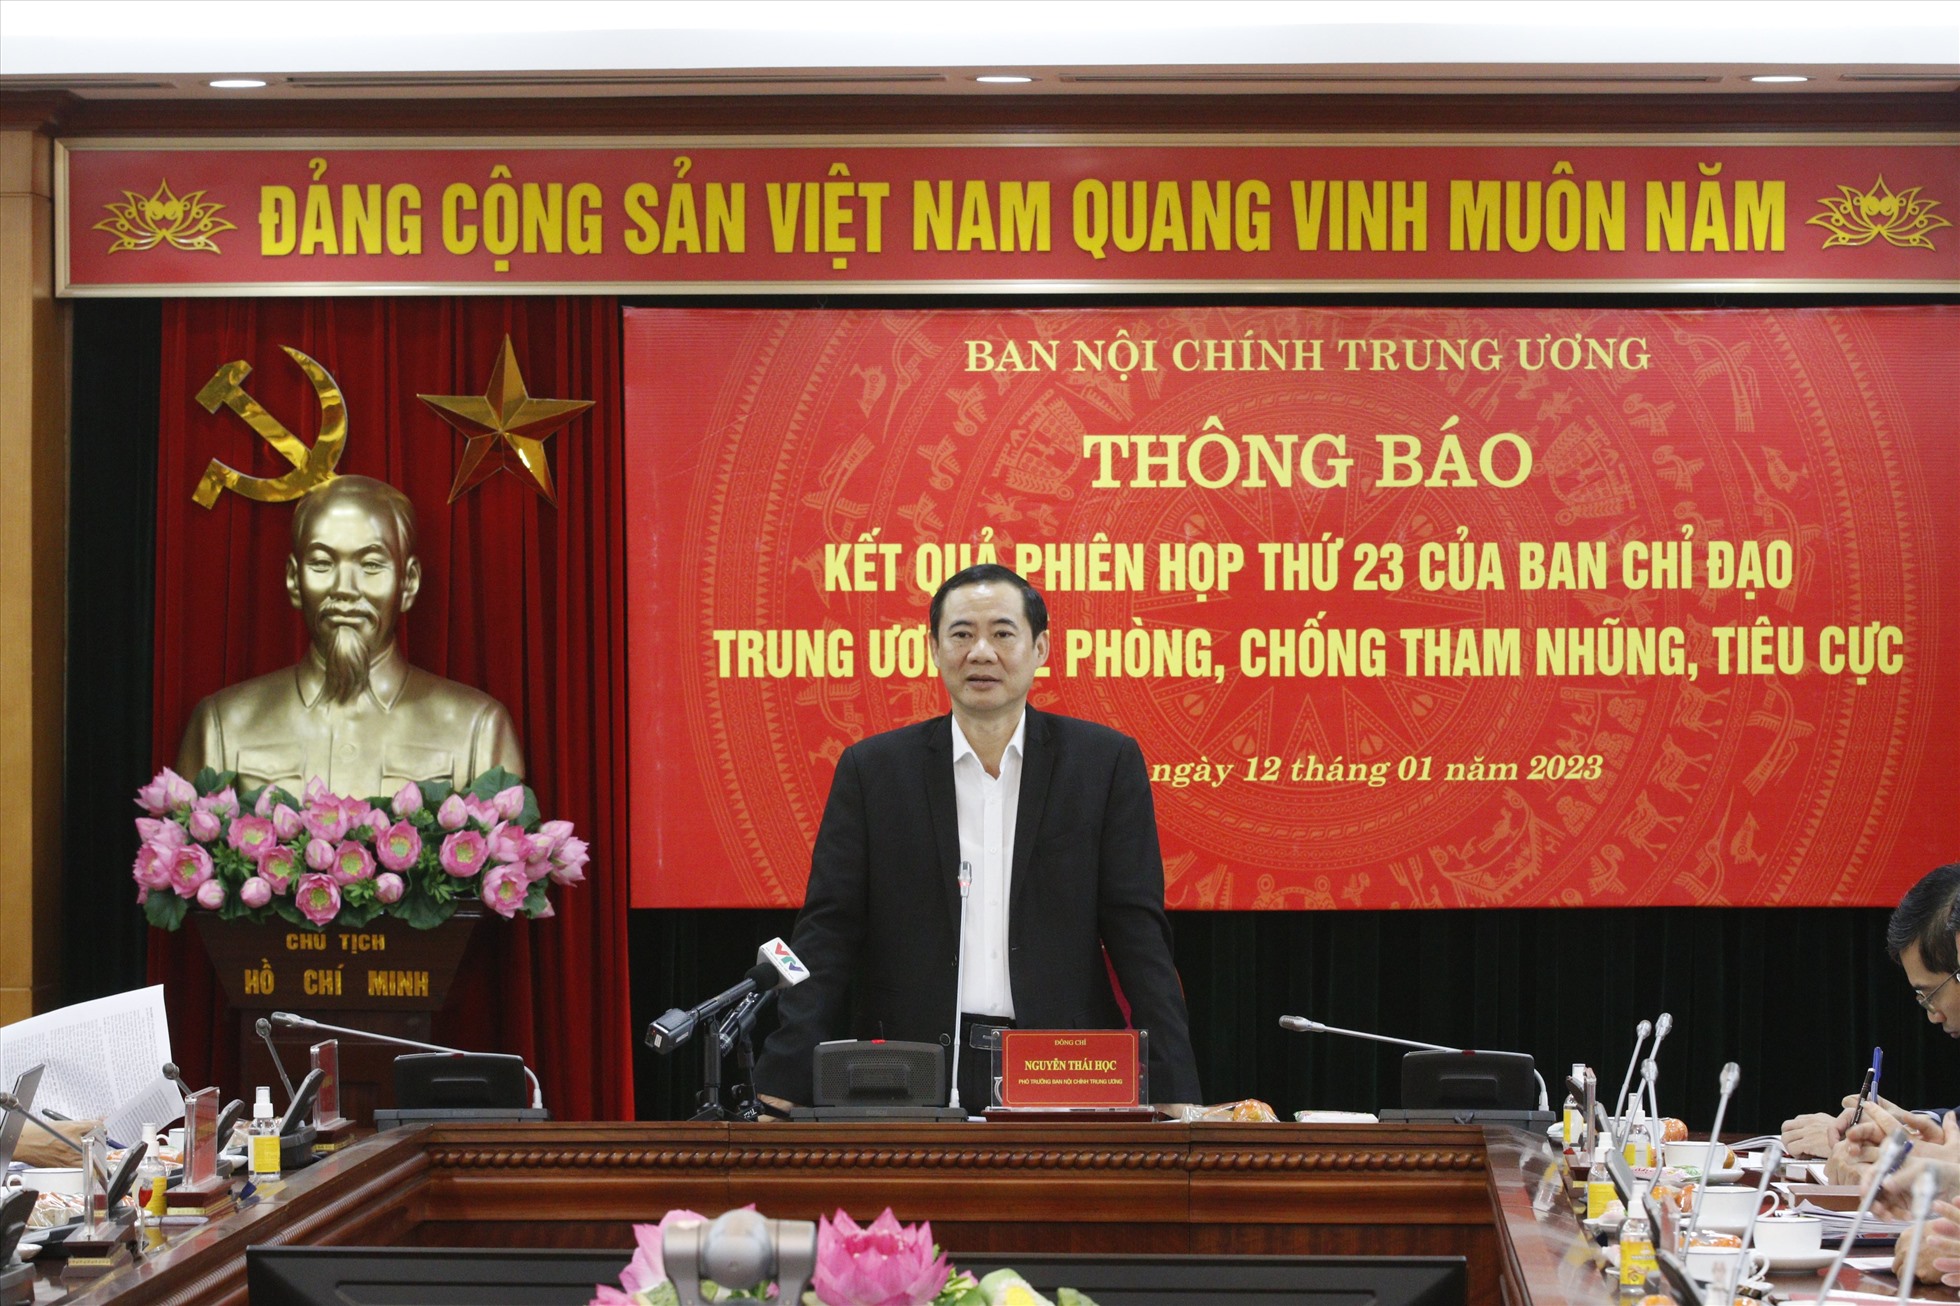 Ông Nguyễn Thái Học - Phó Trưởng Ban Nội chính Trung ương chủ trì cuộc thông báo Kết quả phiên họp 23. Ảnh: T.Vương